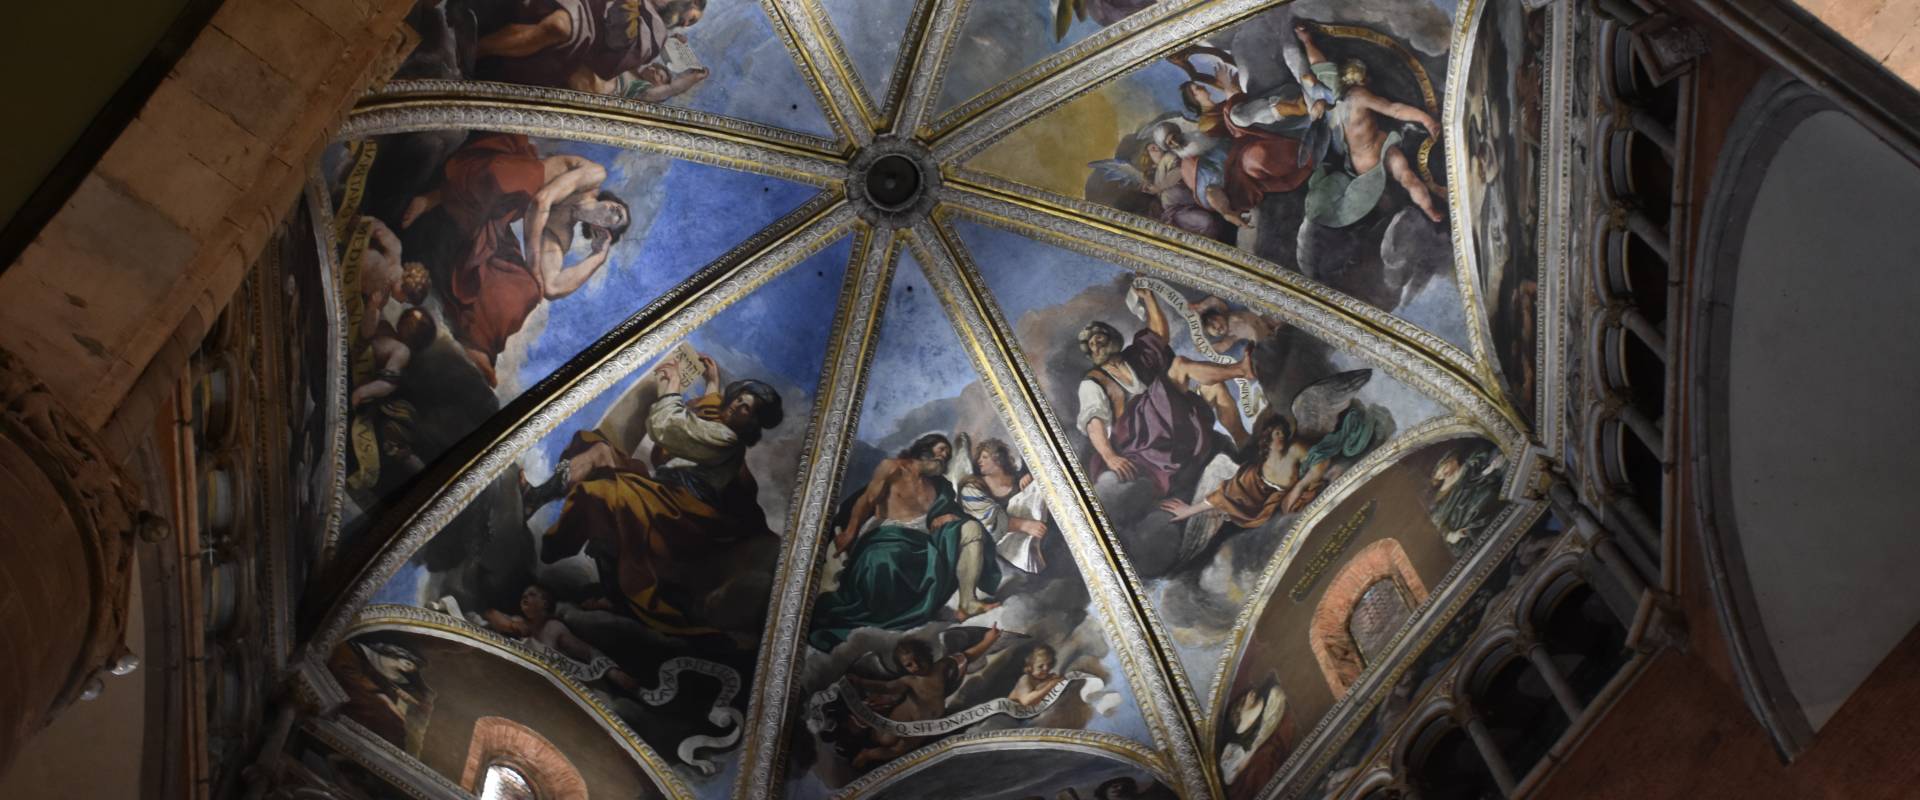 Duomo di Piacenza. La cupola del Guercino photo by Mantovanim Raffaella